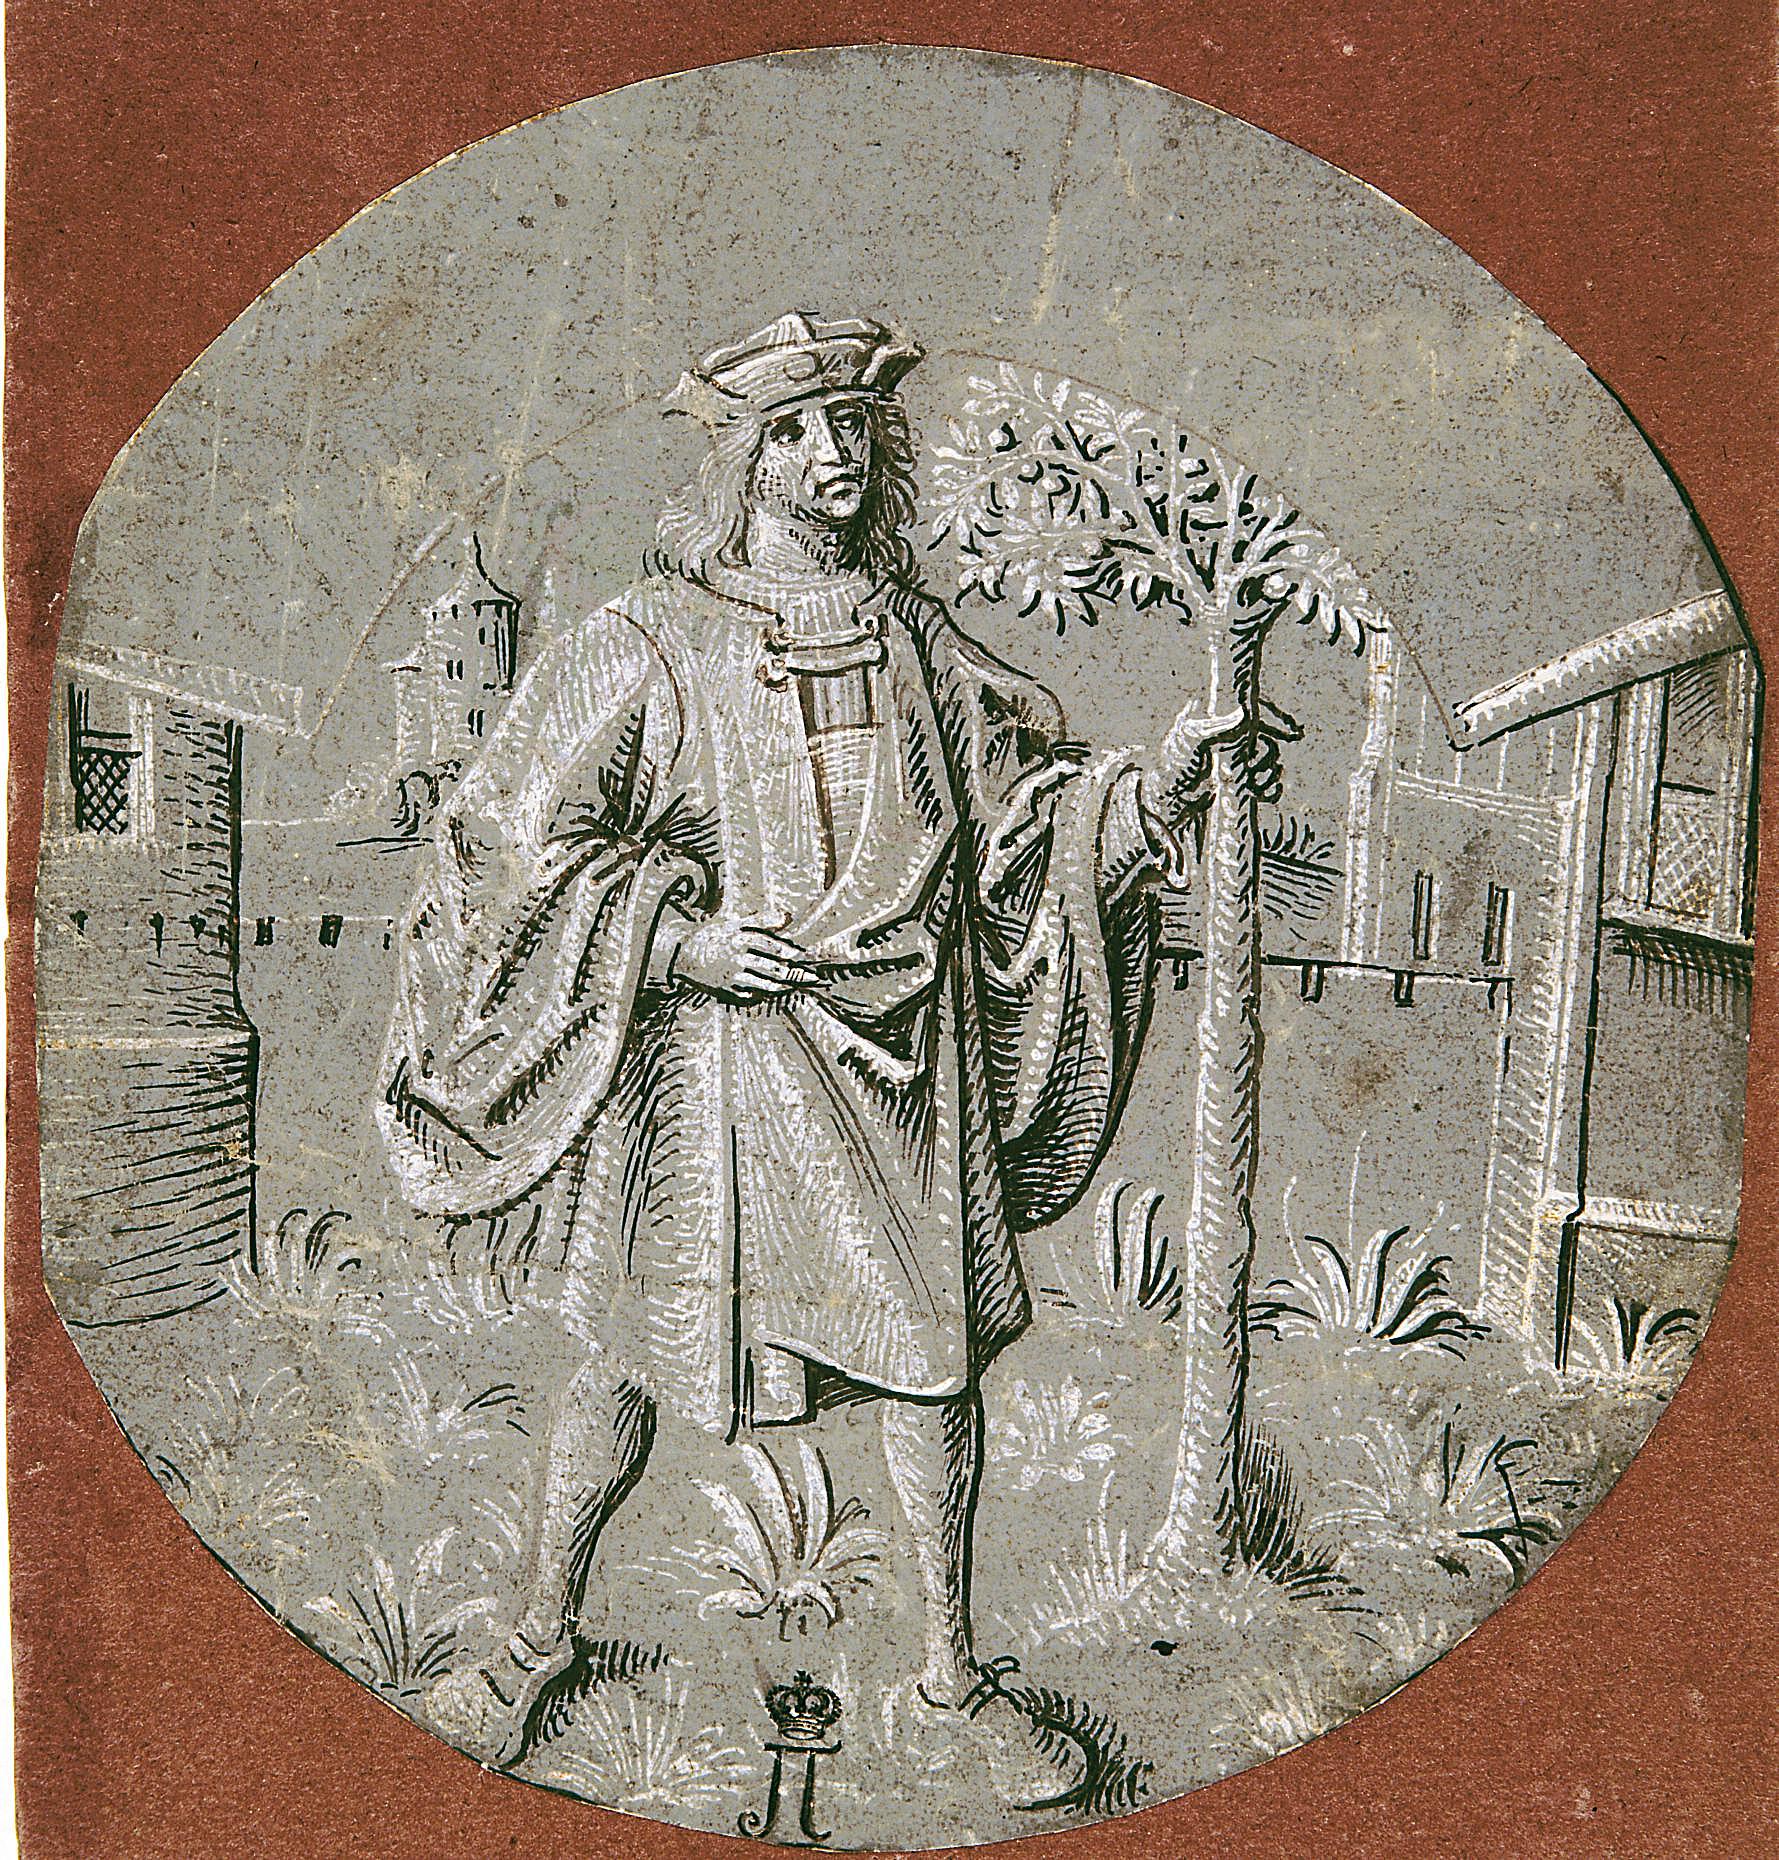 Мастер смерти Авессалома. "Молодой человек, держащийся за ствол дерева 9аллегория месяца апреля)". Около 1510. Эрмитаж, Санкт-Петербург.